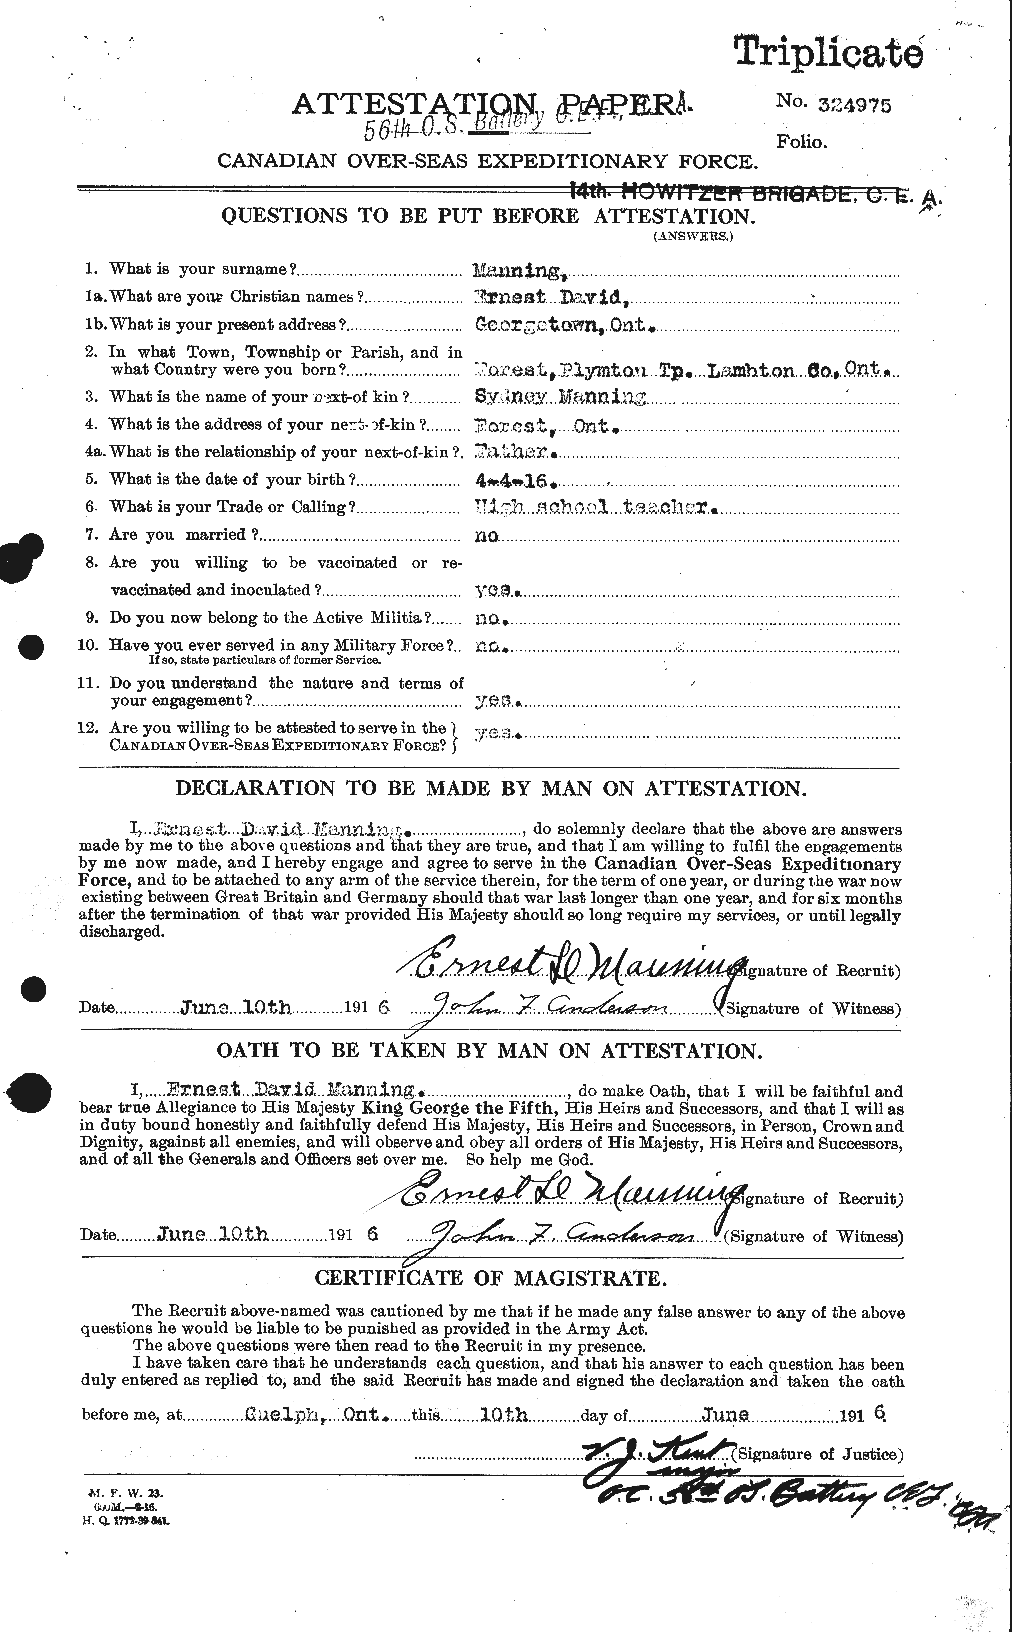 Dossiers du Personnel de la Première Guerre mondiale - CEC 479619a